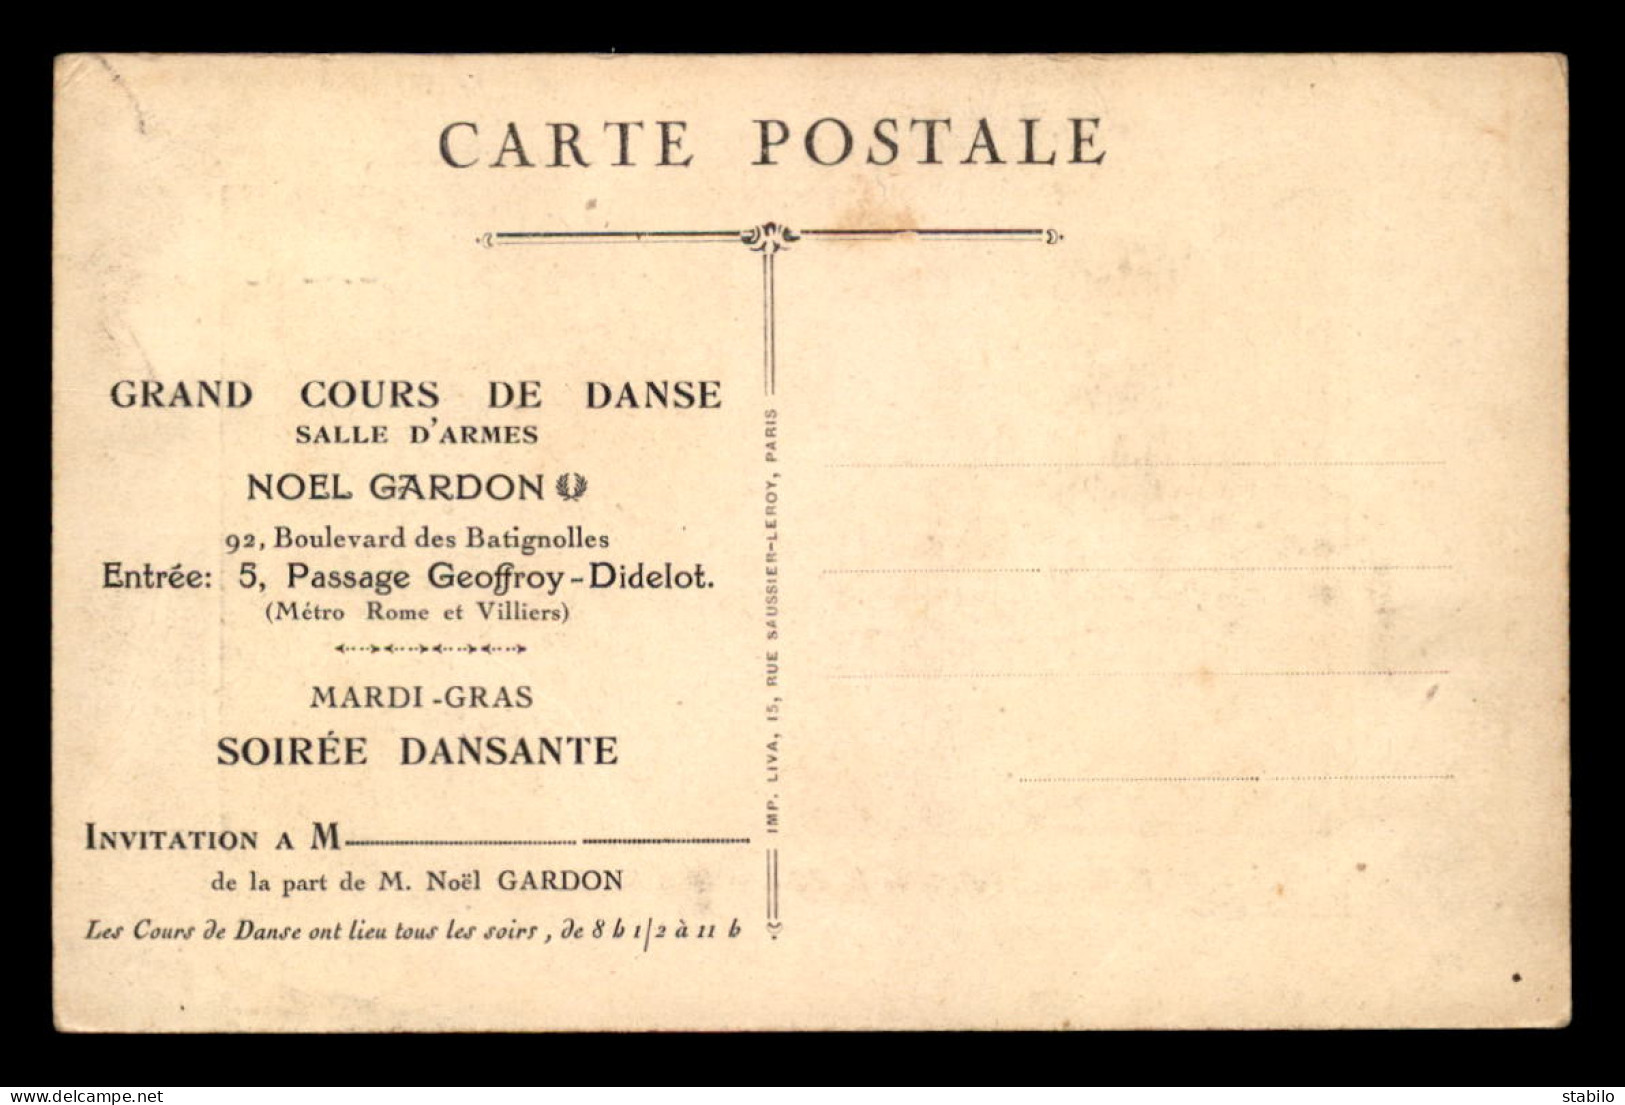 75 - PARIS 17EME - INVITATION AU GRAND CONCOURS DE DANSE SALLE D'ARMES NOEL GARDON, 92 BOULEVARD DES BATIGNOLLES  - Paris (17)